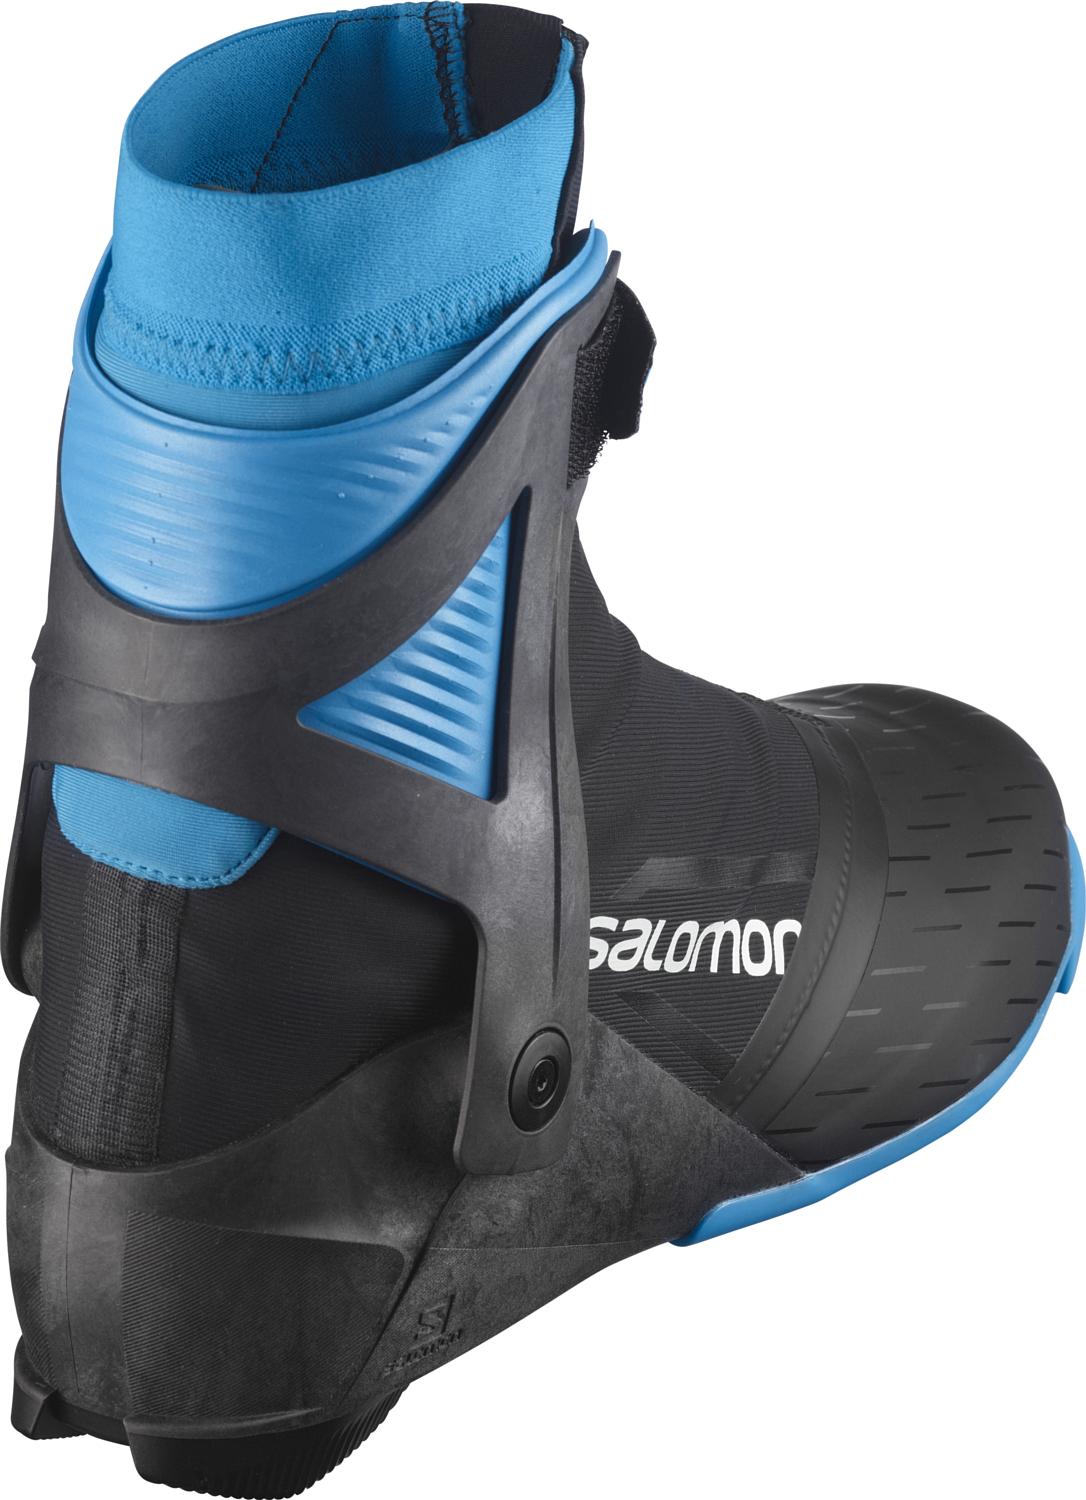 Лыжные ботинки SALOMON 2021-22 S/Max Carbon Skate Prolink